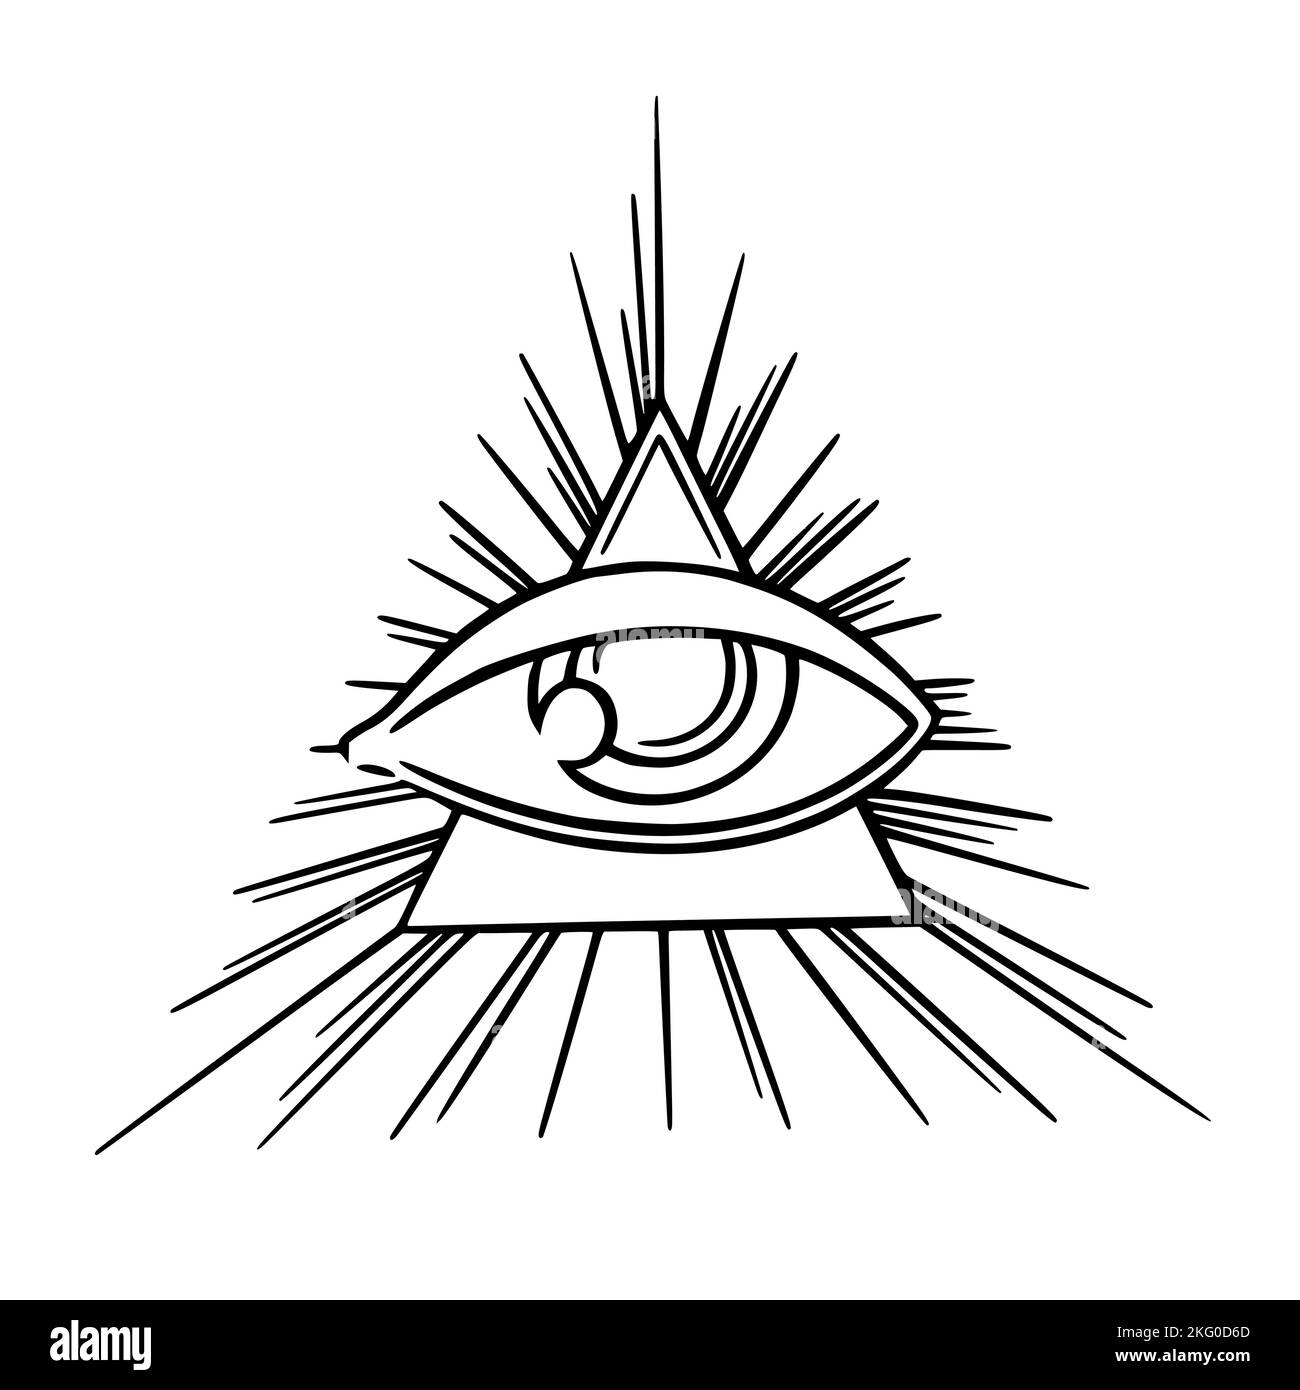 Illuminaten-Auge der Freimaurer-Geheimgesellschaft. Tarot sehen alle das dritte Auge im Dreieck mit Strahlen. Vektorgrafik isoliert auf weißem Hintergrund Stock Vektor